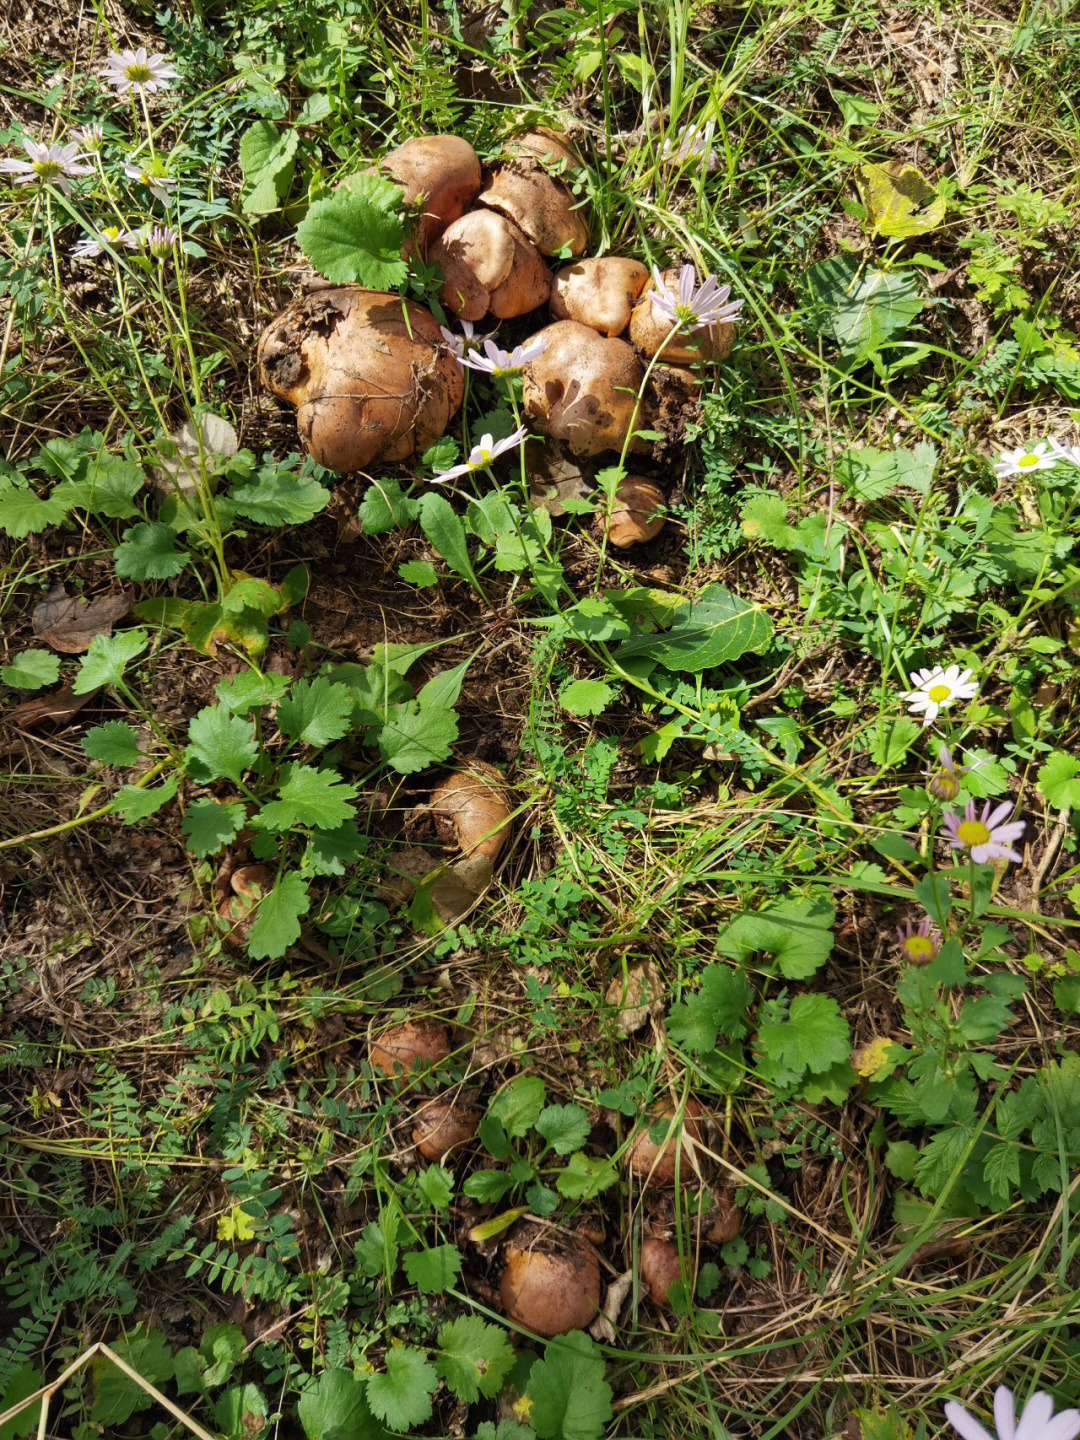 又到了采蘑菇的季节了杨树口菇